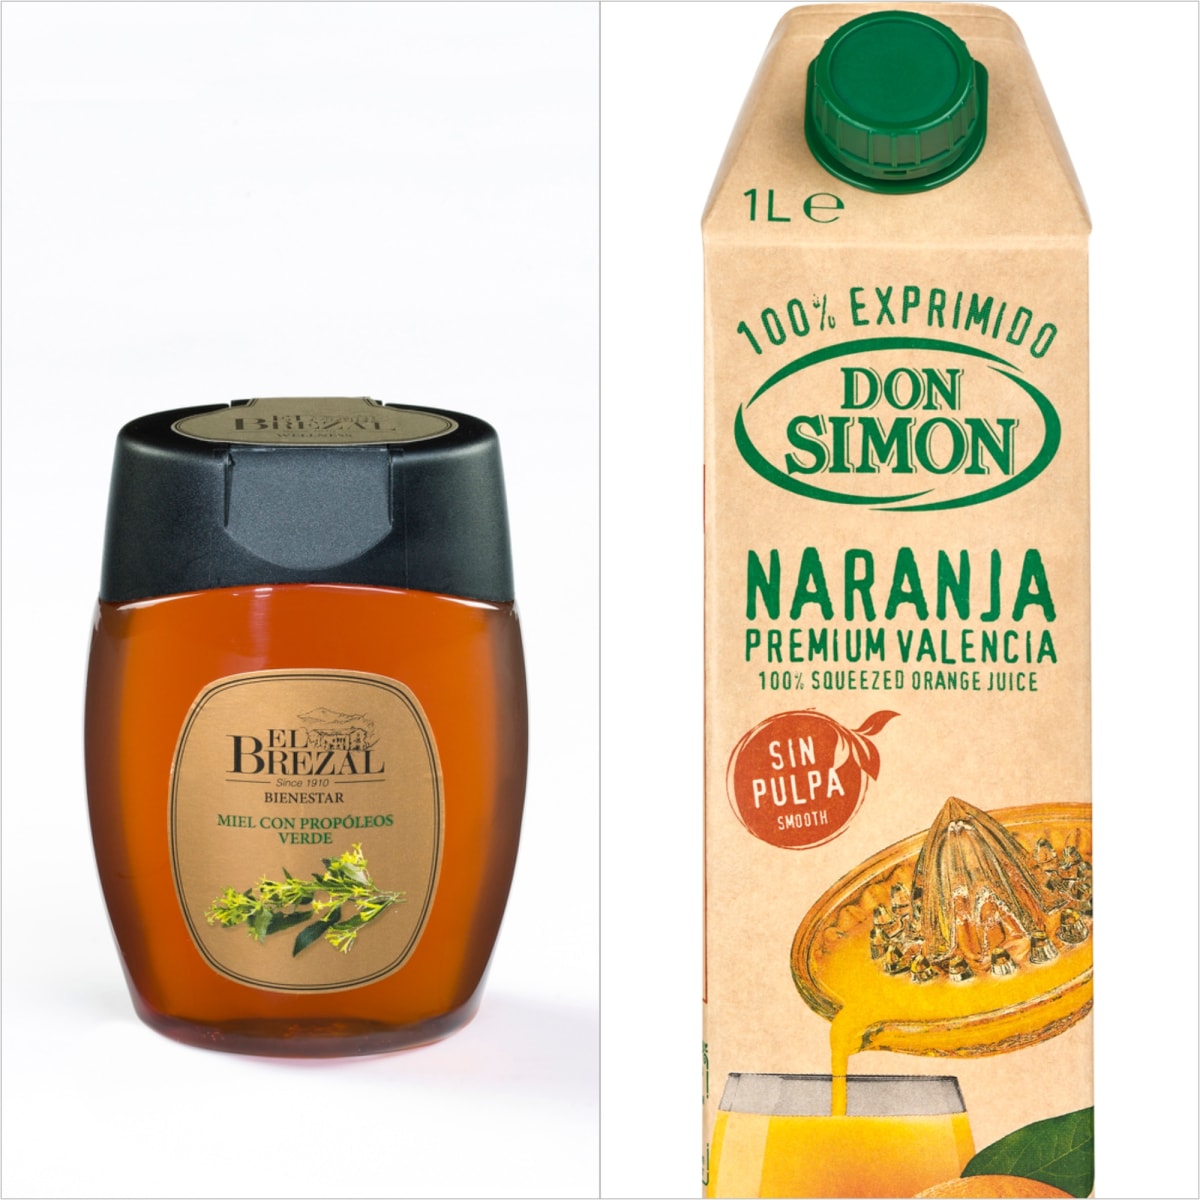 Novinky na trhu: žitné rohlíky, kvalitní med, džus nebo voňavá šunka 2